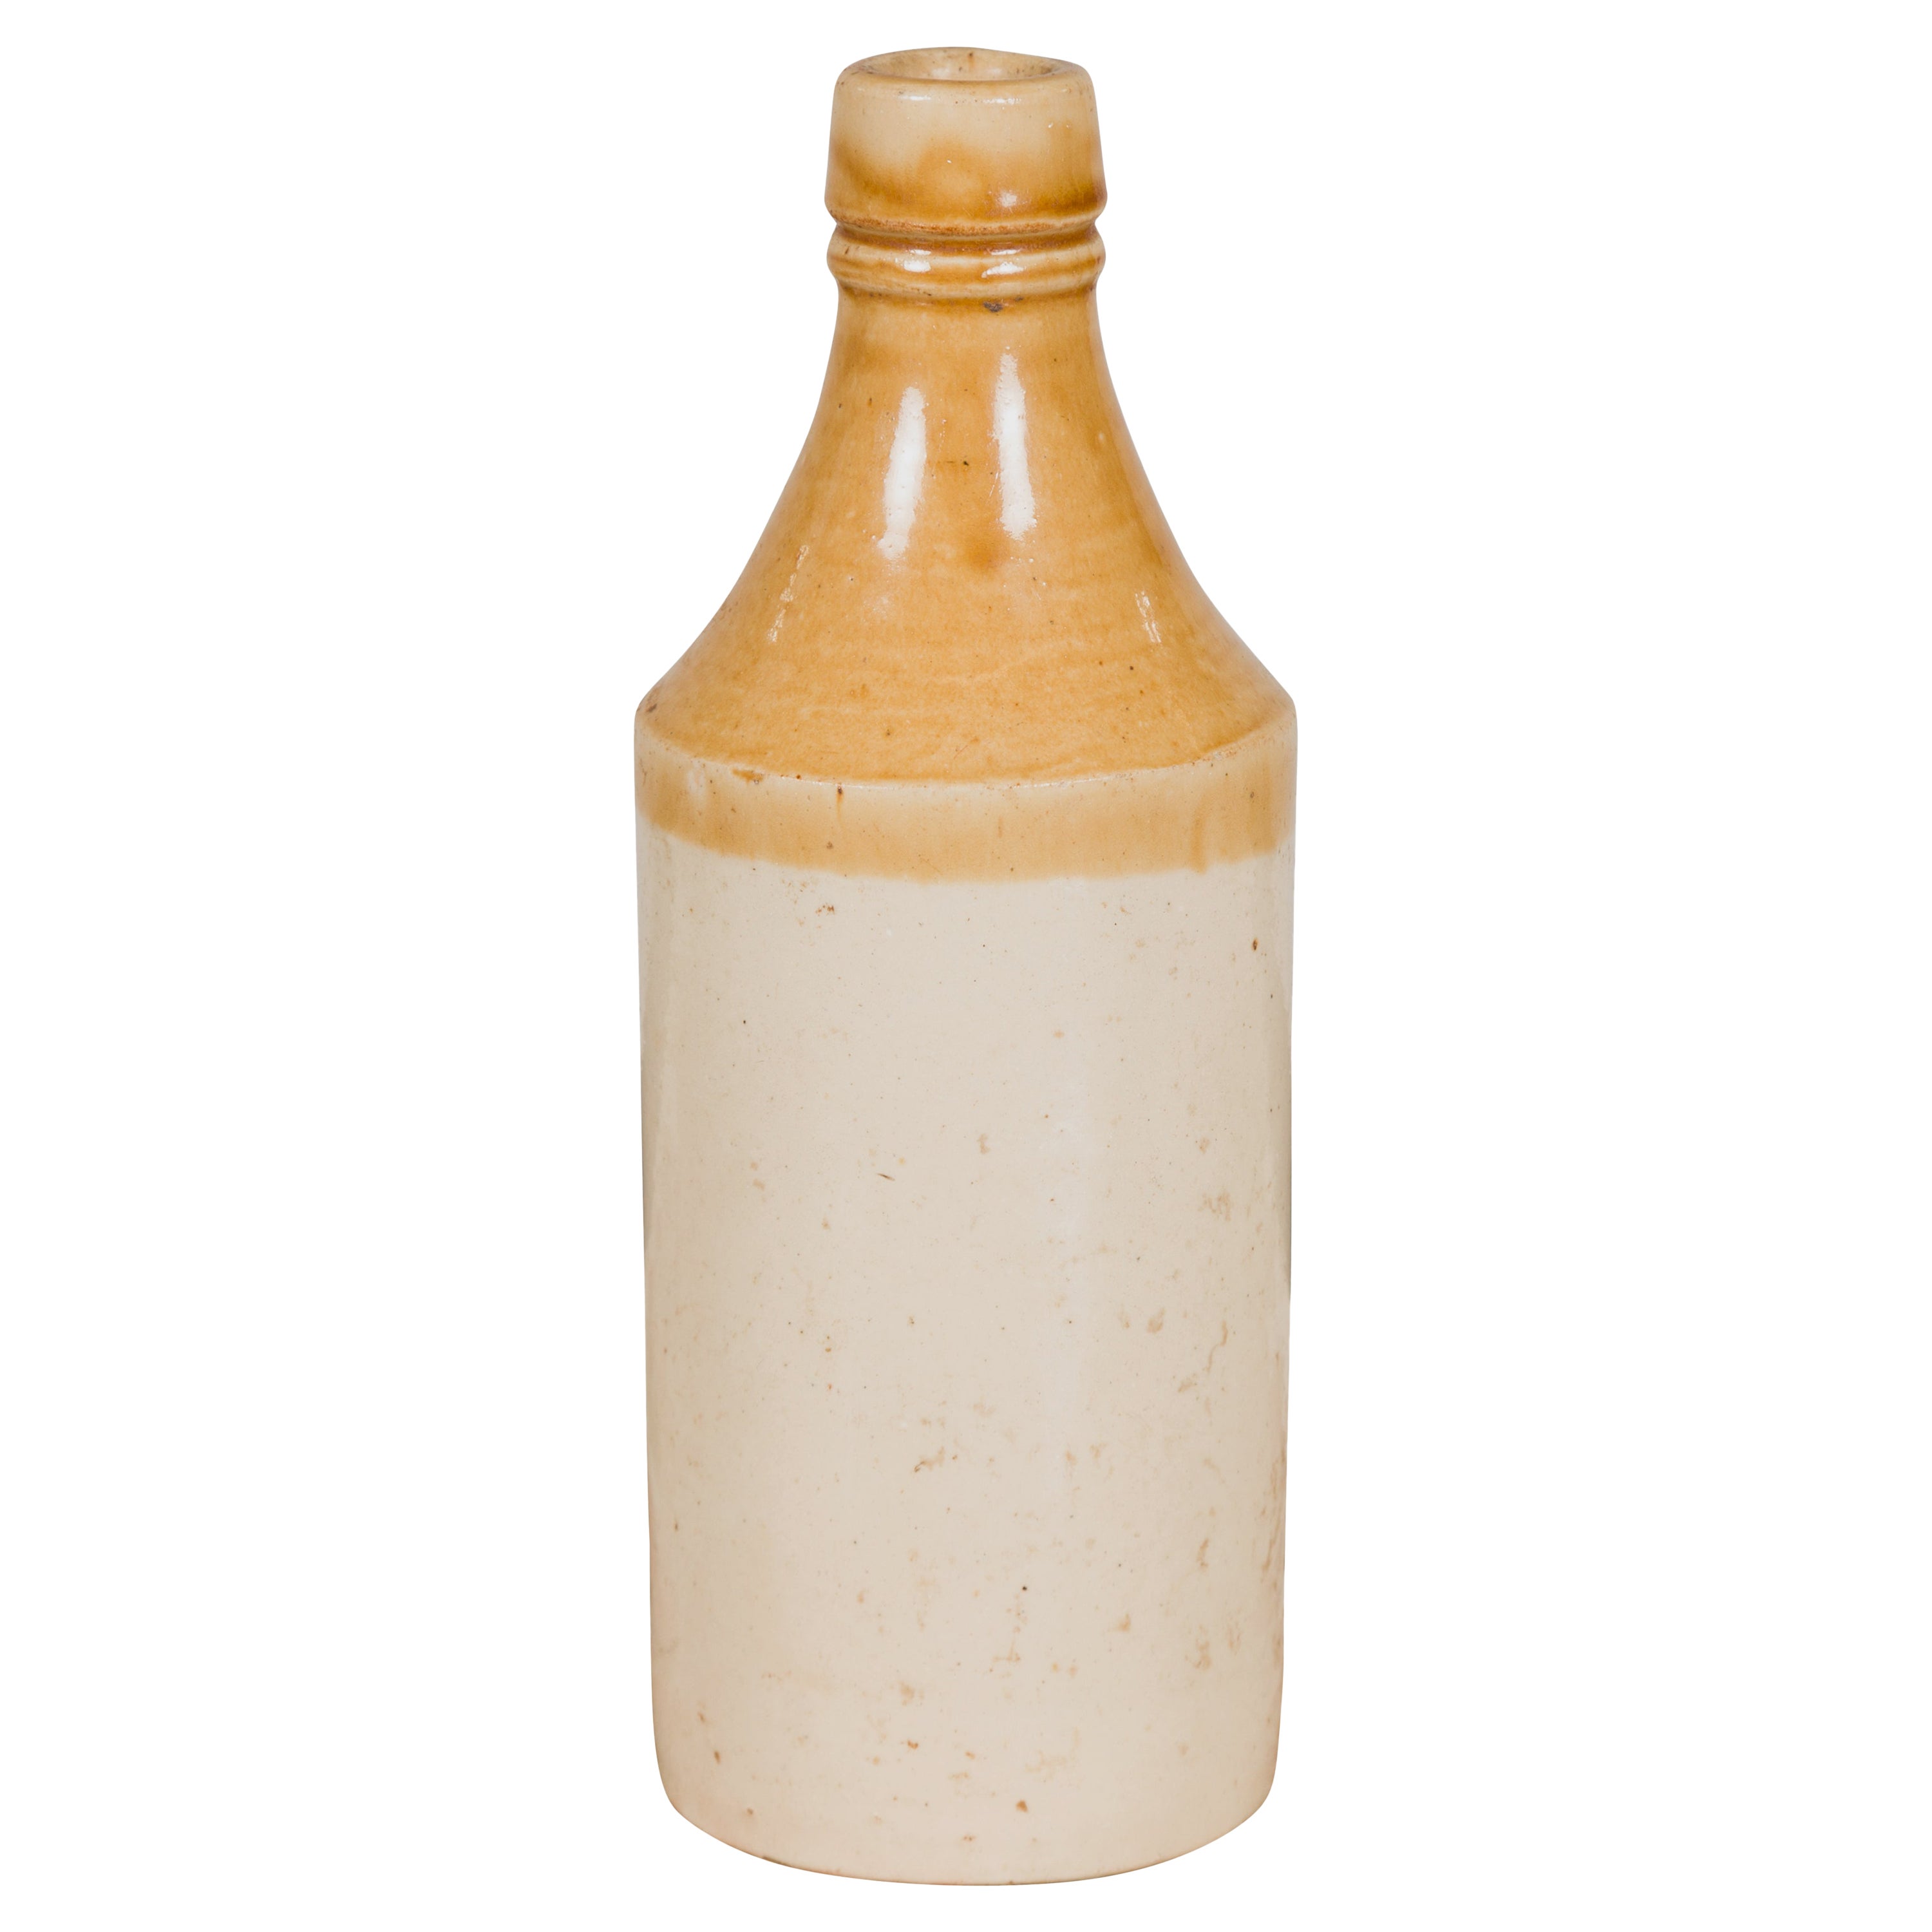 Chinesischer Vintage-Flask aus Keramik mit gelber und cremefarbener Glasur, mehrfach verfügbar